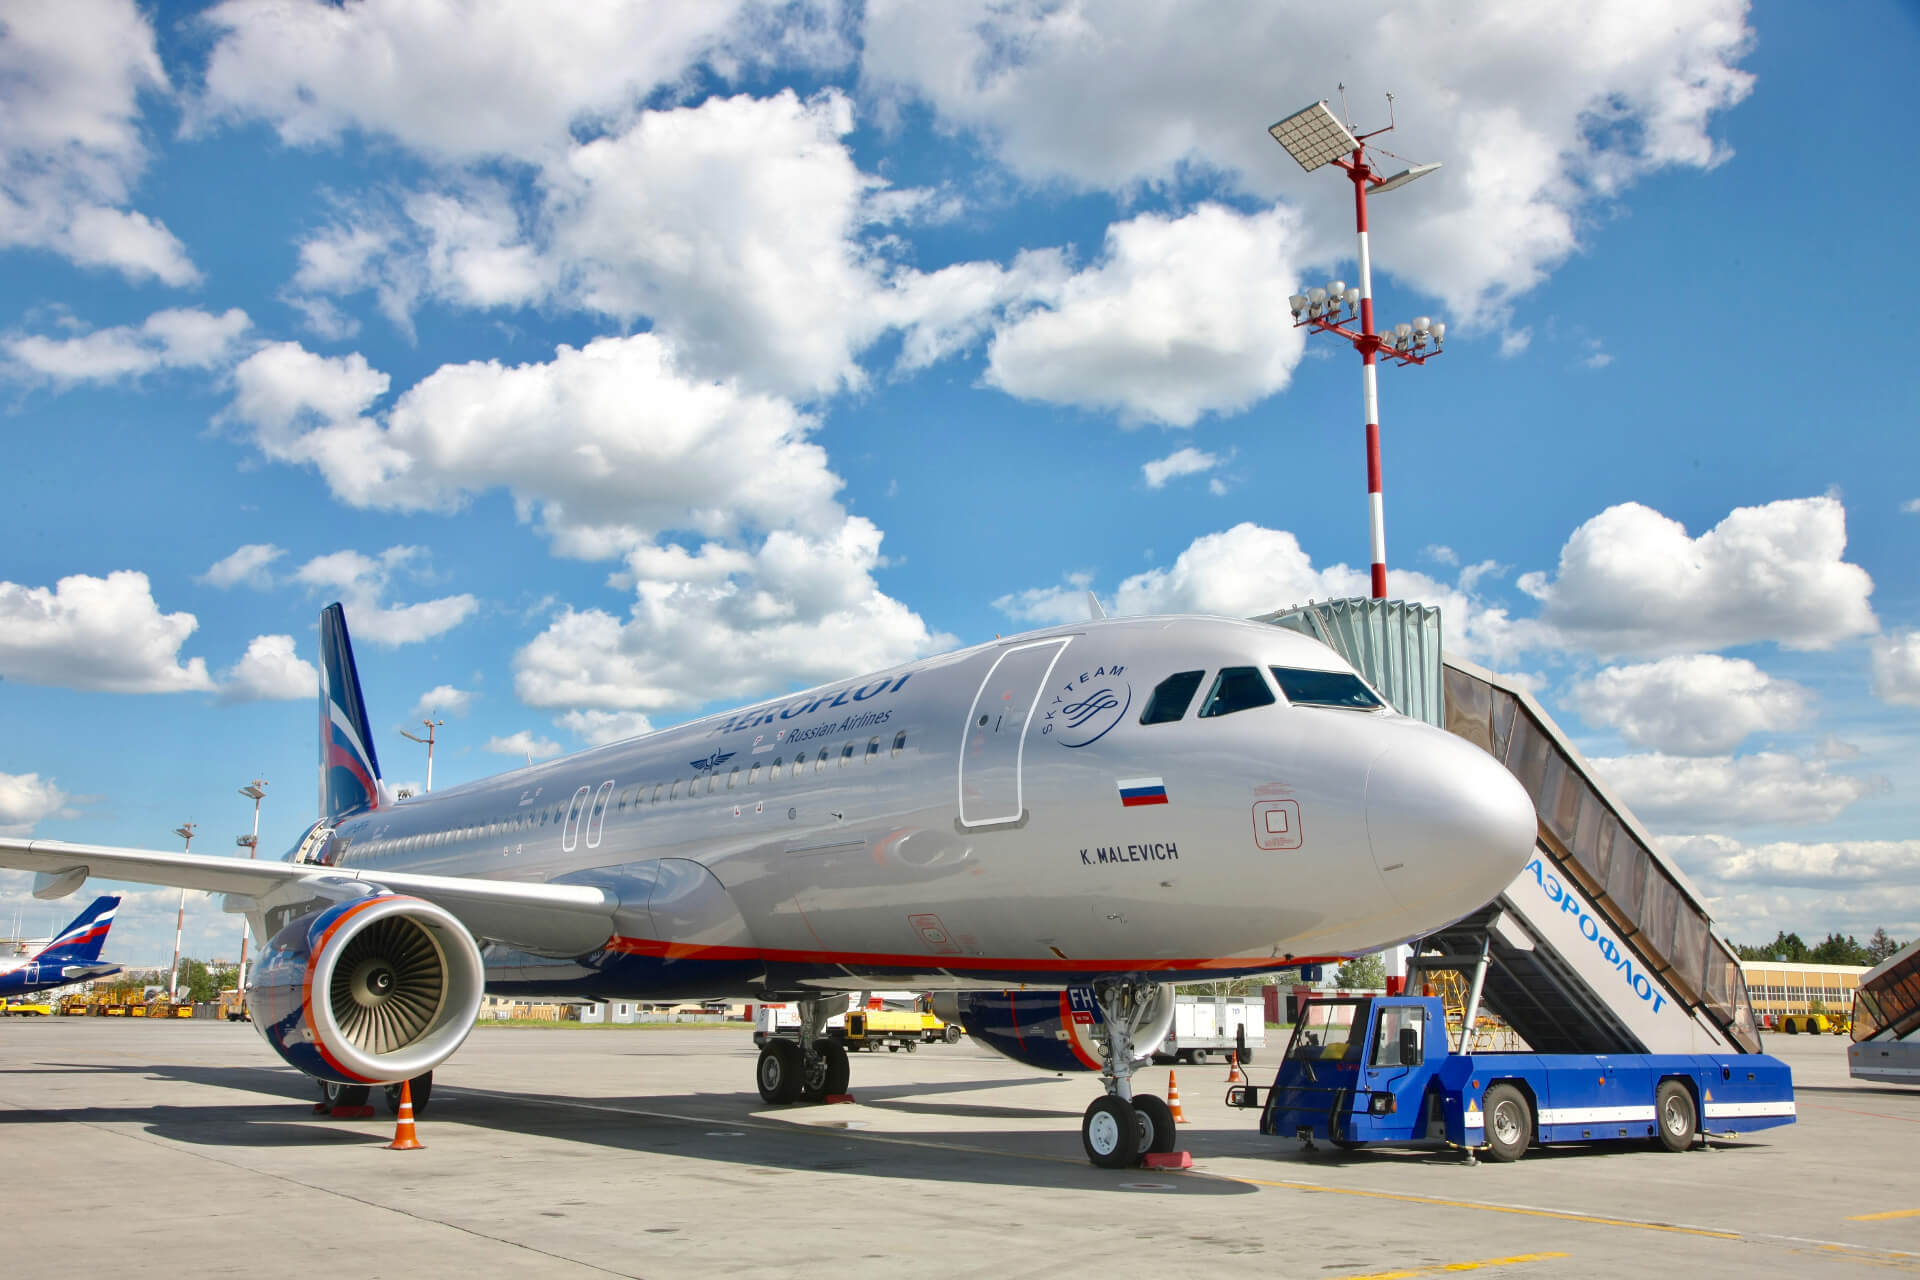 A százhúsz éves IBUSZ a felejthetetlen utazások szervezése során az megbízható repülést biztosító partnerével, az Aeroflot csapatával is együttműködik.